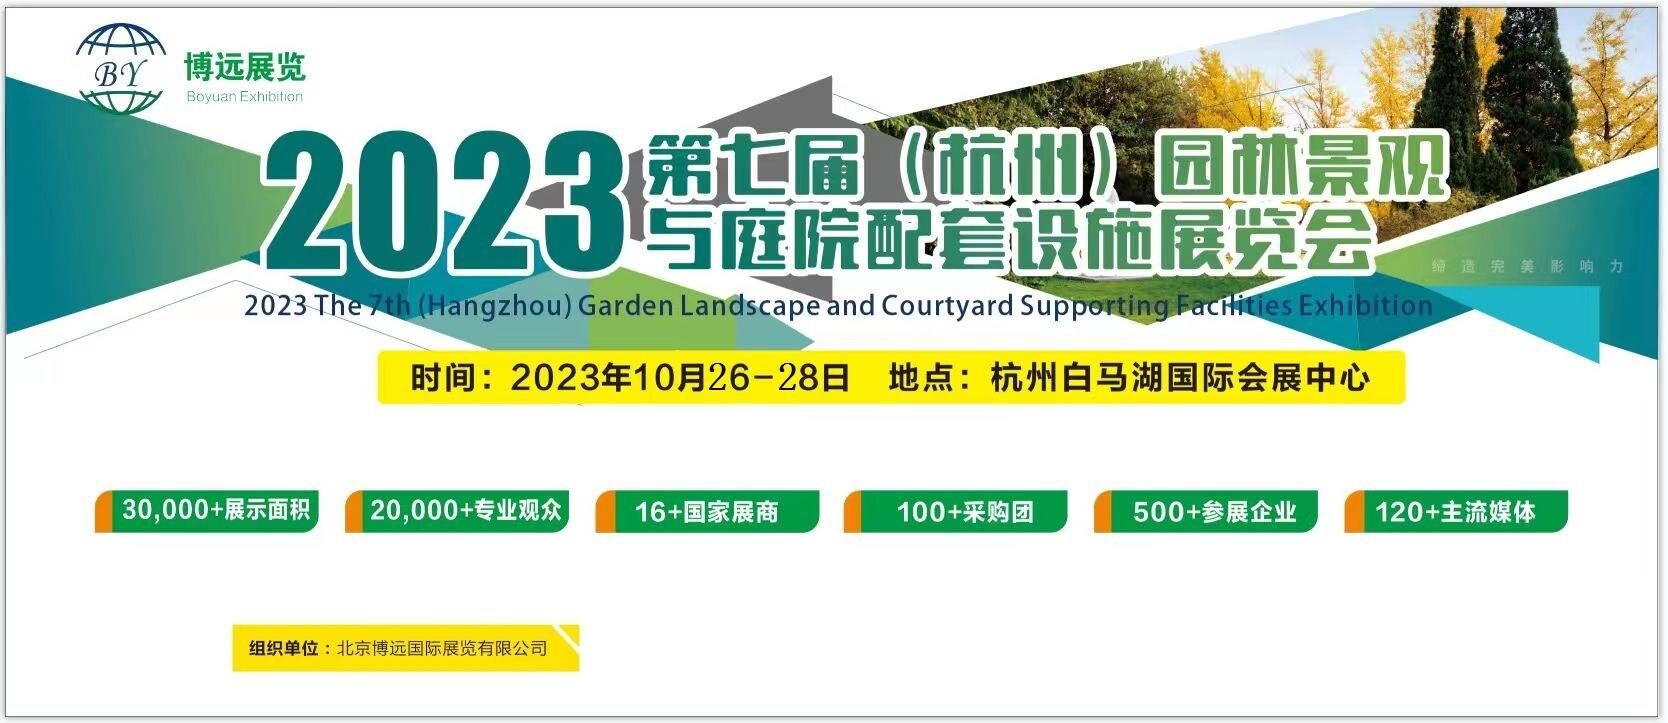 2023 七届杭州园林景观产业展览会